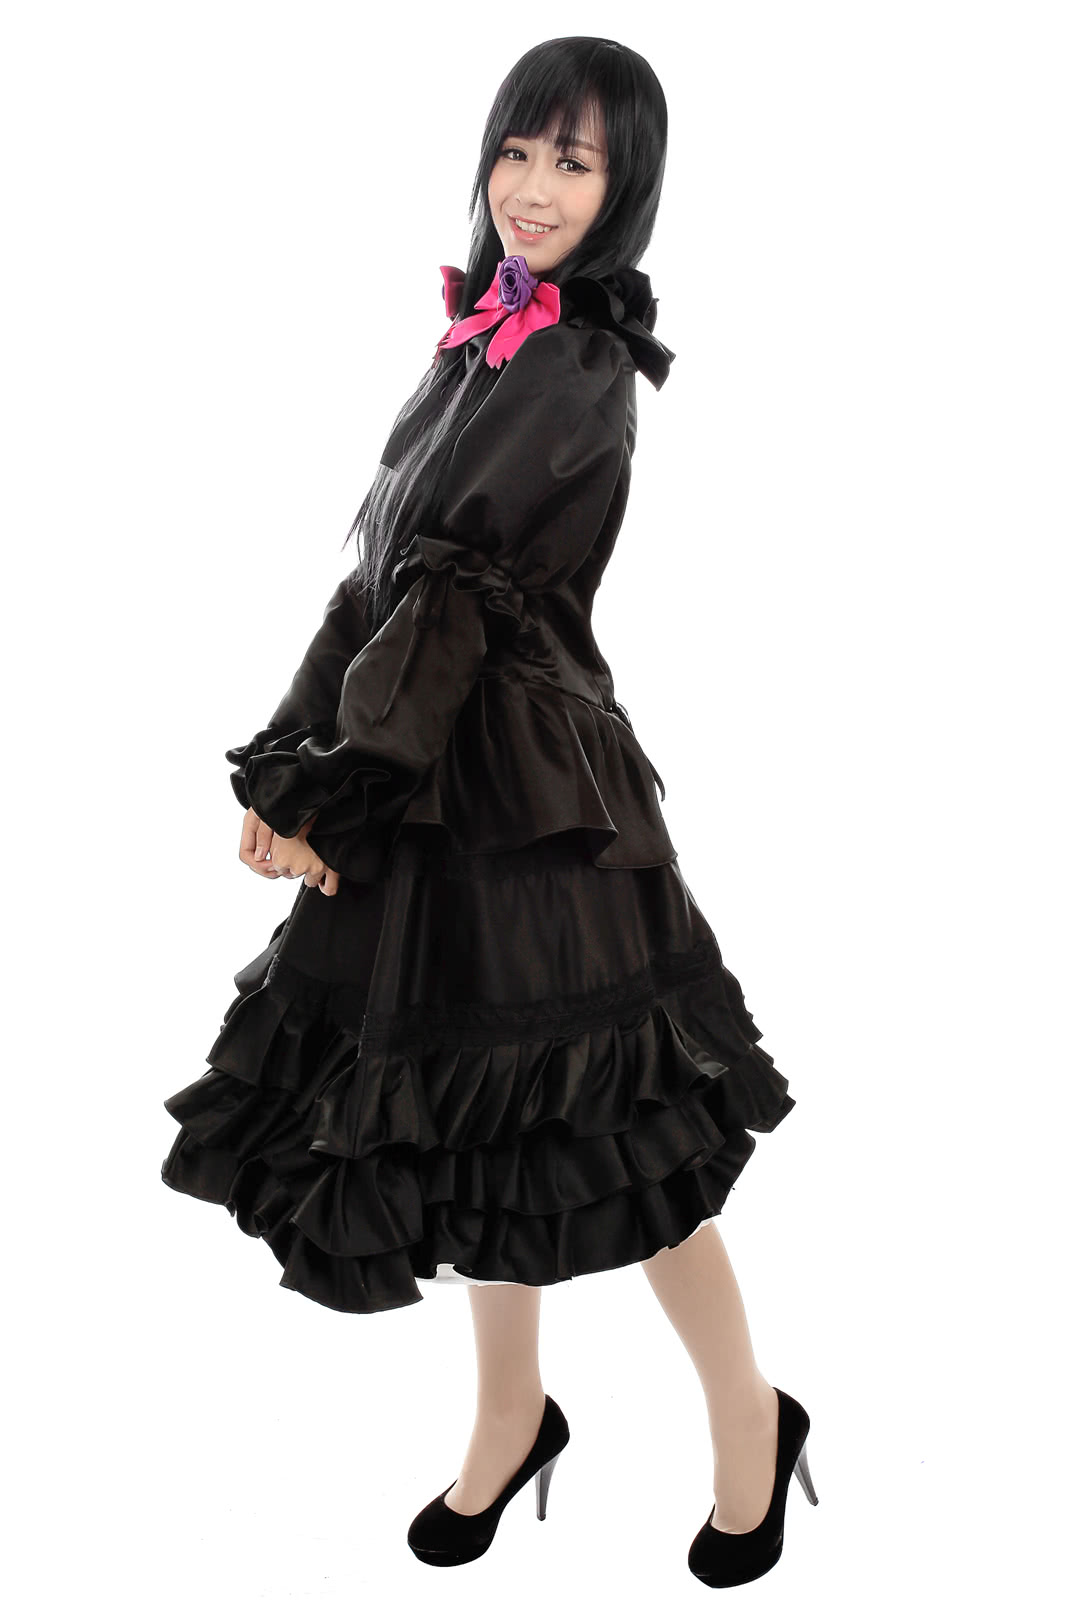 Datum mit einem Live Tokisaki Kurumi Cosplay Kostüme schwarz macht dich so sexy